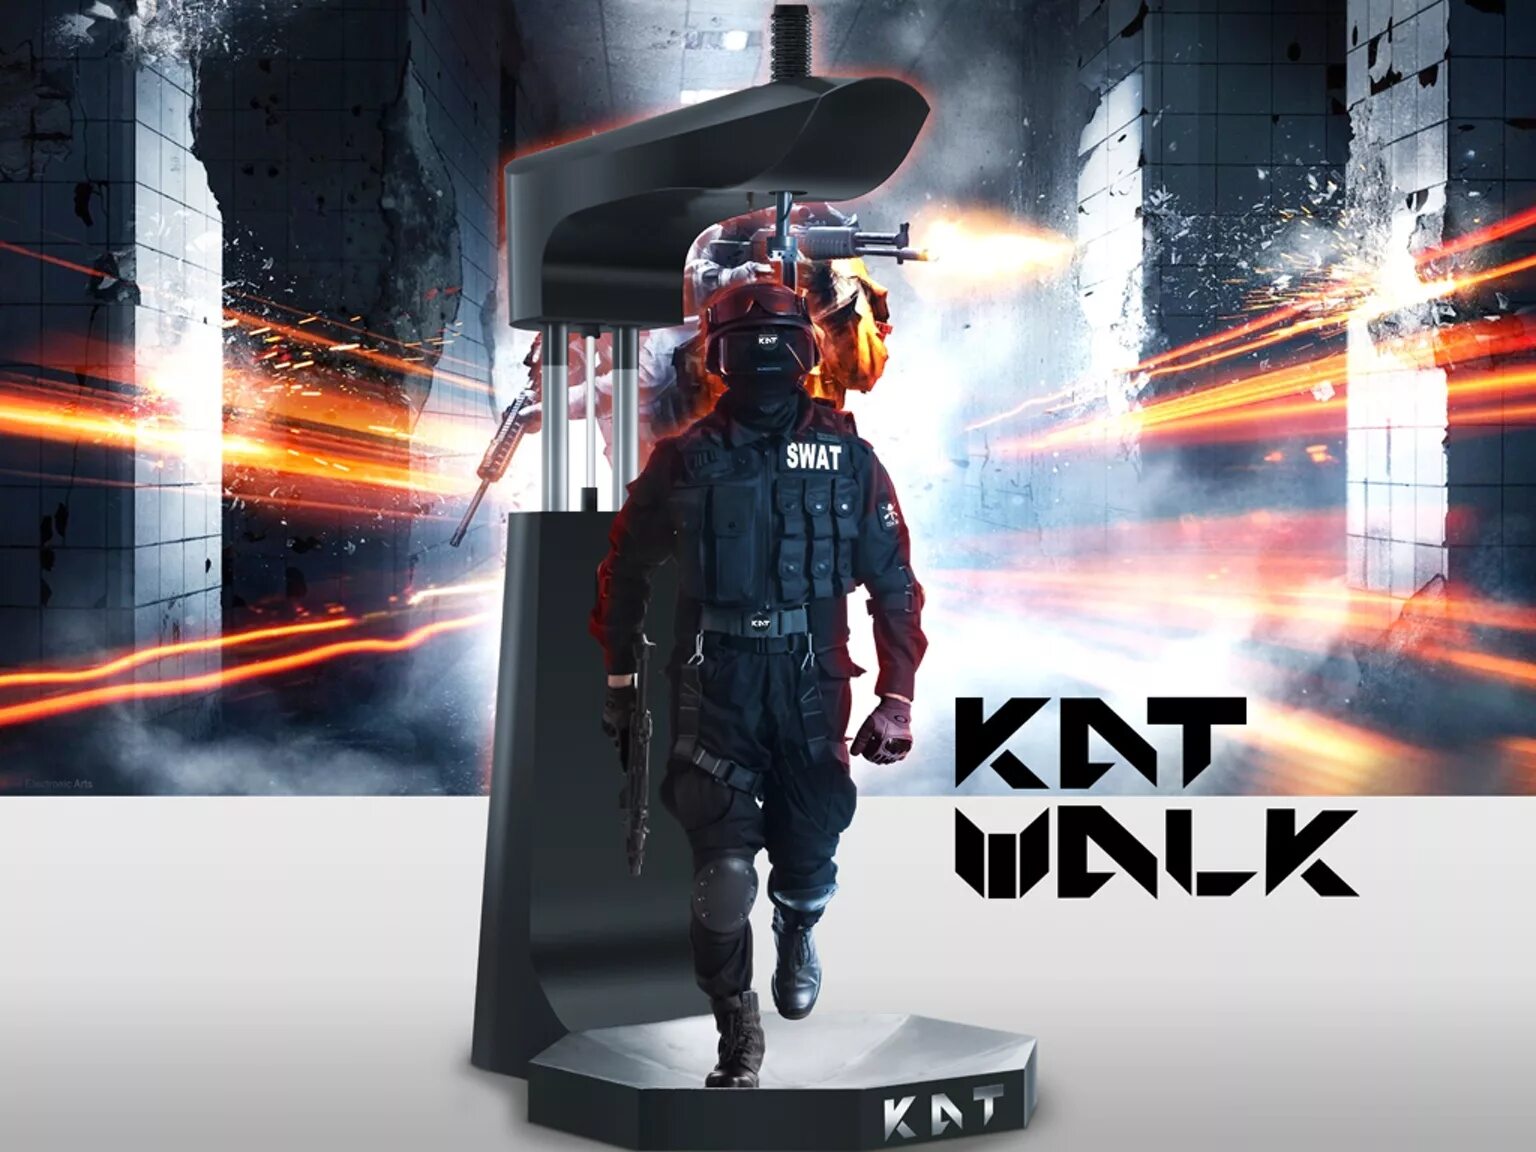 Kat vr. Дорожка для виртуальной реальности. Kat walk VR. Кат ВР игровая платформа. Kat VR драйвера.